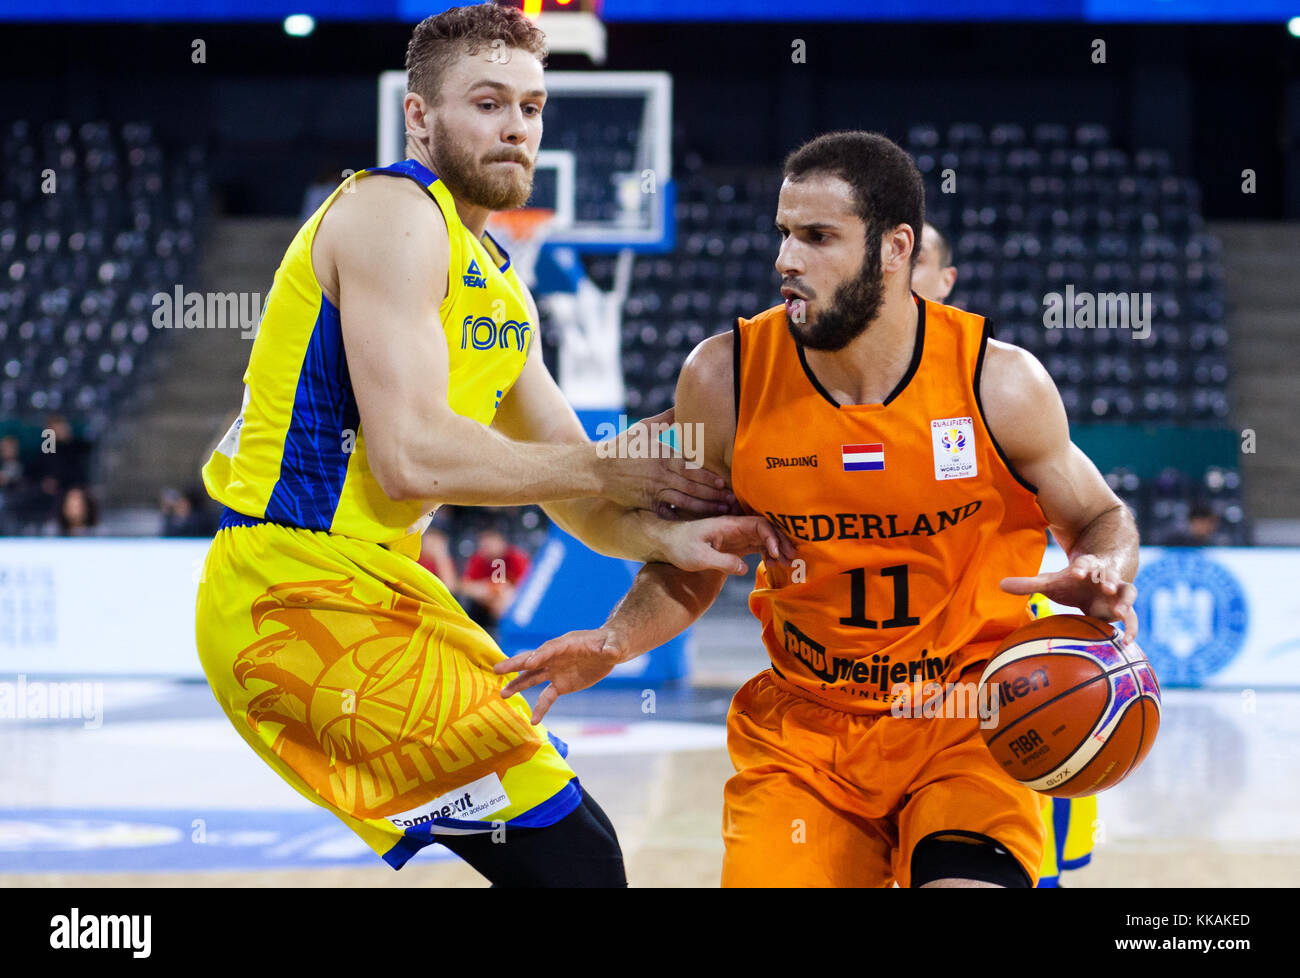 Rolland torok (l) de Rumania y Gerrit hammink de Holanda en acción durante  la Copa del Mundo de baloncesto fiba 2019 qualifier juego entre Rumania y  Holanda, CLUJ-NAPOCA, el 26 de noviembre